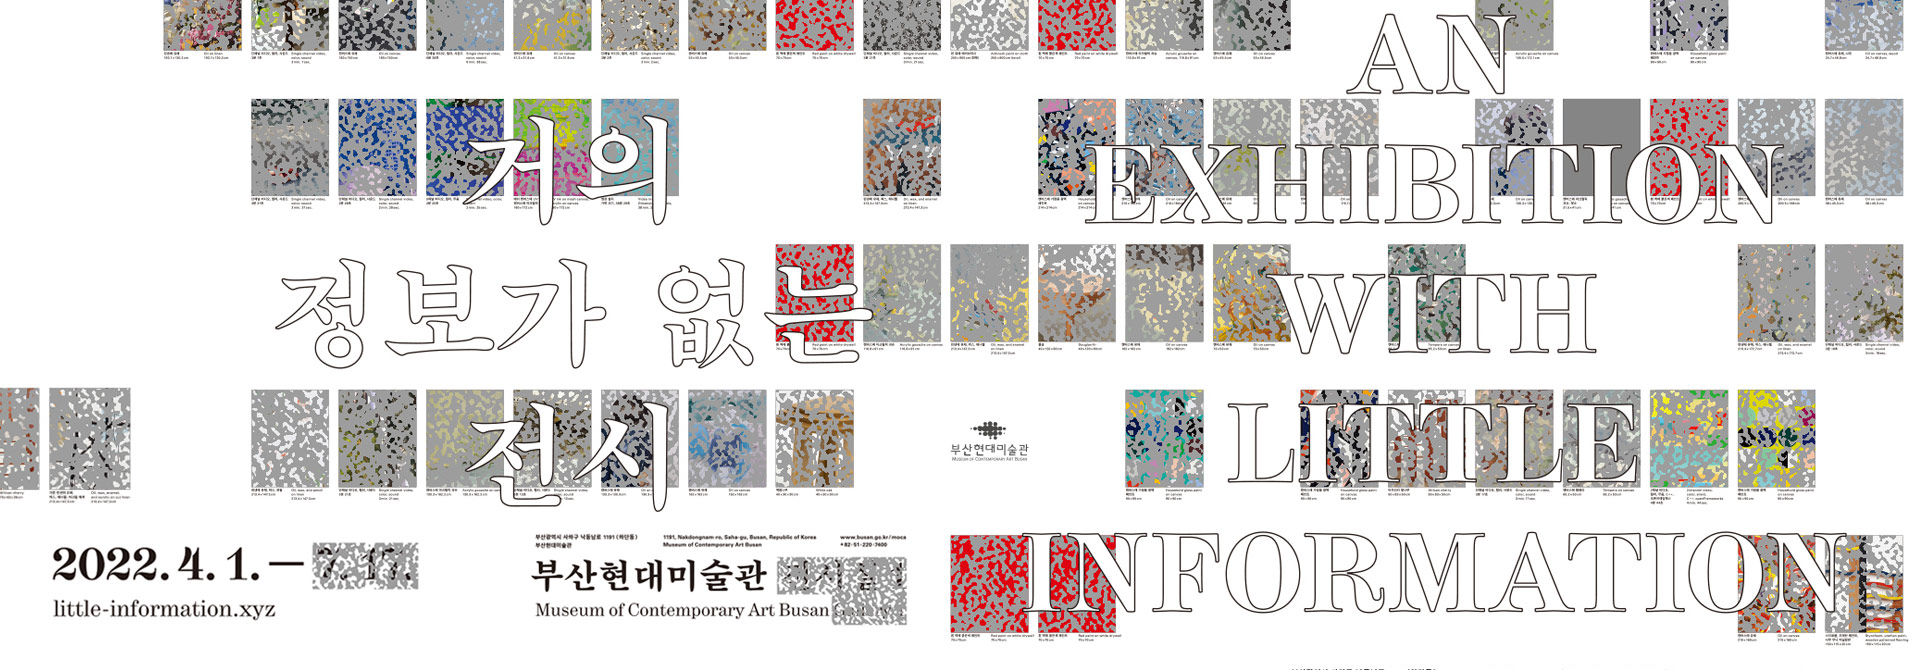 거의 정보가 없는 전시
AN EXHIBITION WITH LITTLE INFORMATION
2022.4.1.~
부산광역시 사하구 낙동남로 1191(하단동) 부산현대미술관
1191, Nakdongnam-ro, Saha-gu, Busan, Republic of Korea Museum of Contemporary Art Busan 
www.busan.go.kr/moca +82-51-220-7400
부산현대미술관 Museum of Contemporary Art Busan